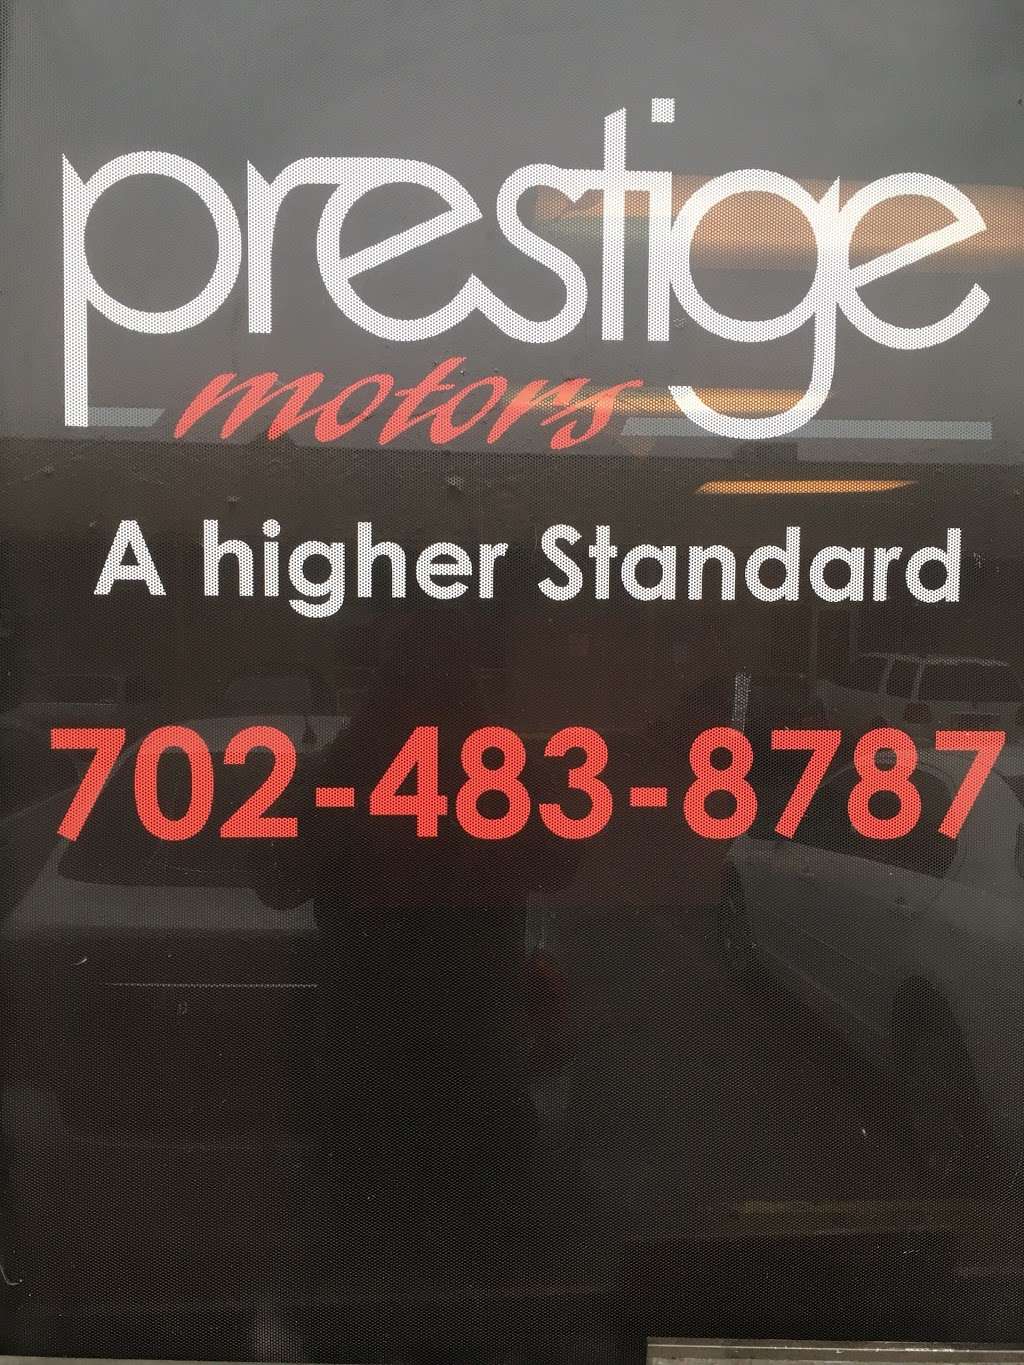 Prestige Car rentals (APEX) | 5115 Dean Martin Dr #408, Las Vegas, NV 89118 | Phone: (702) 703-4993